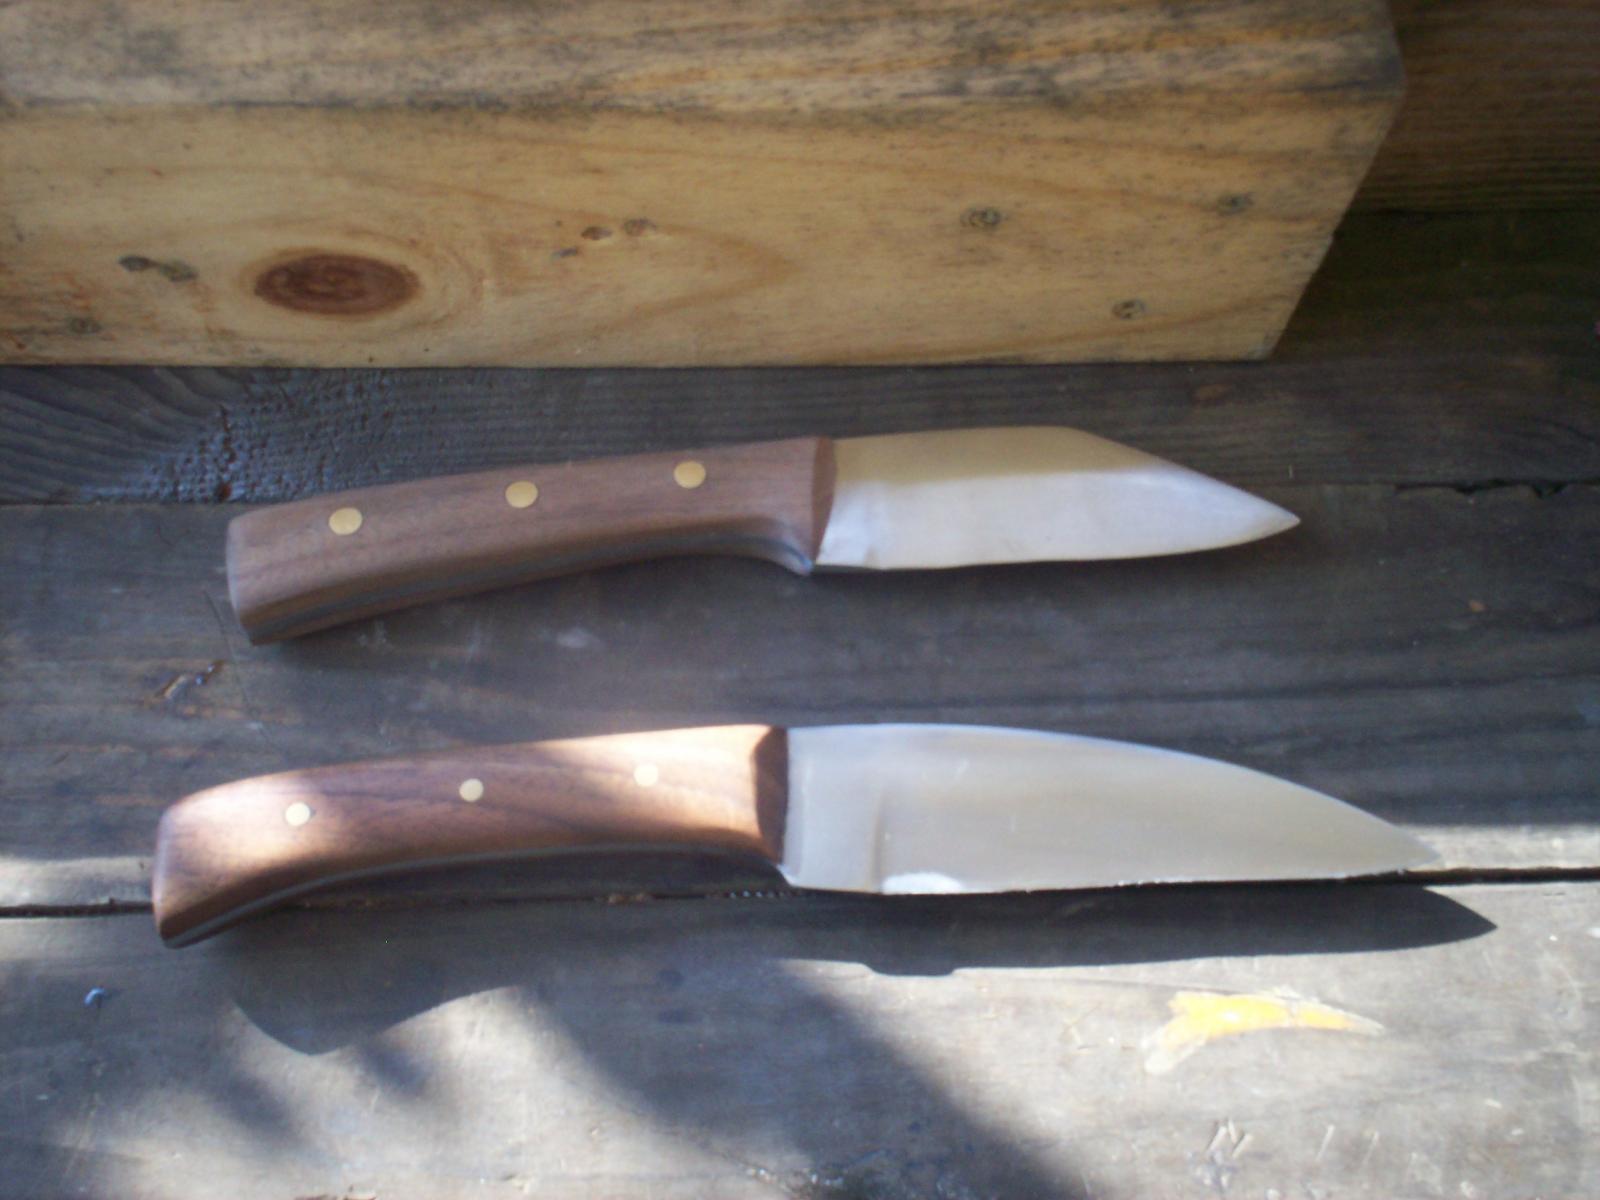 Hand seax-ish knives